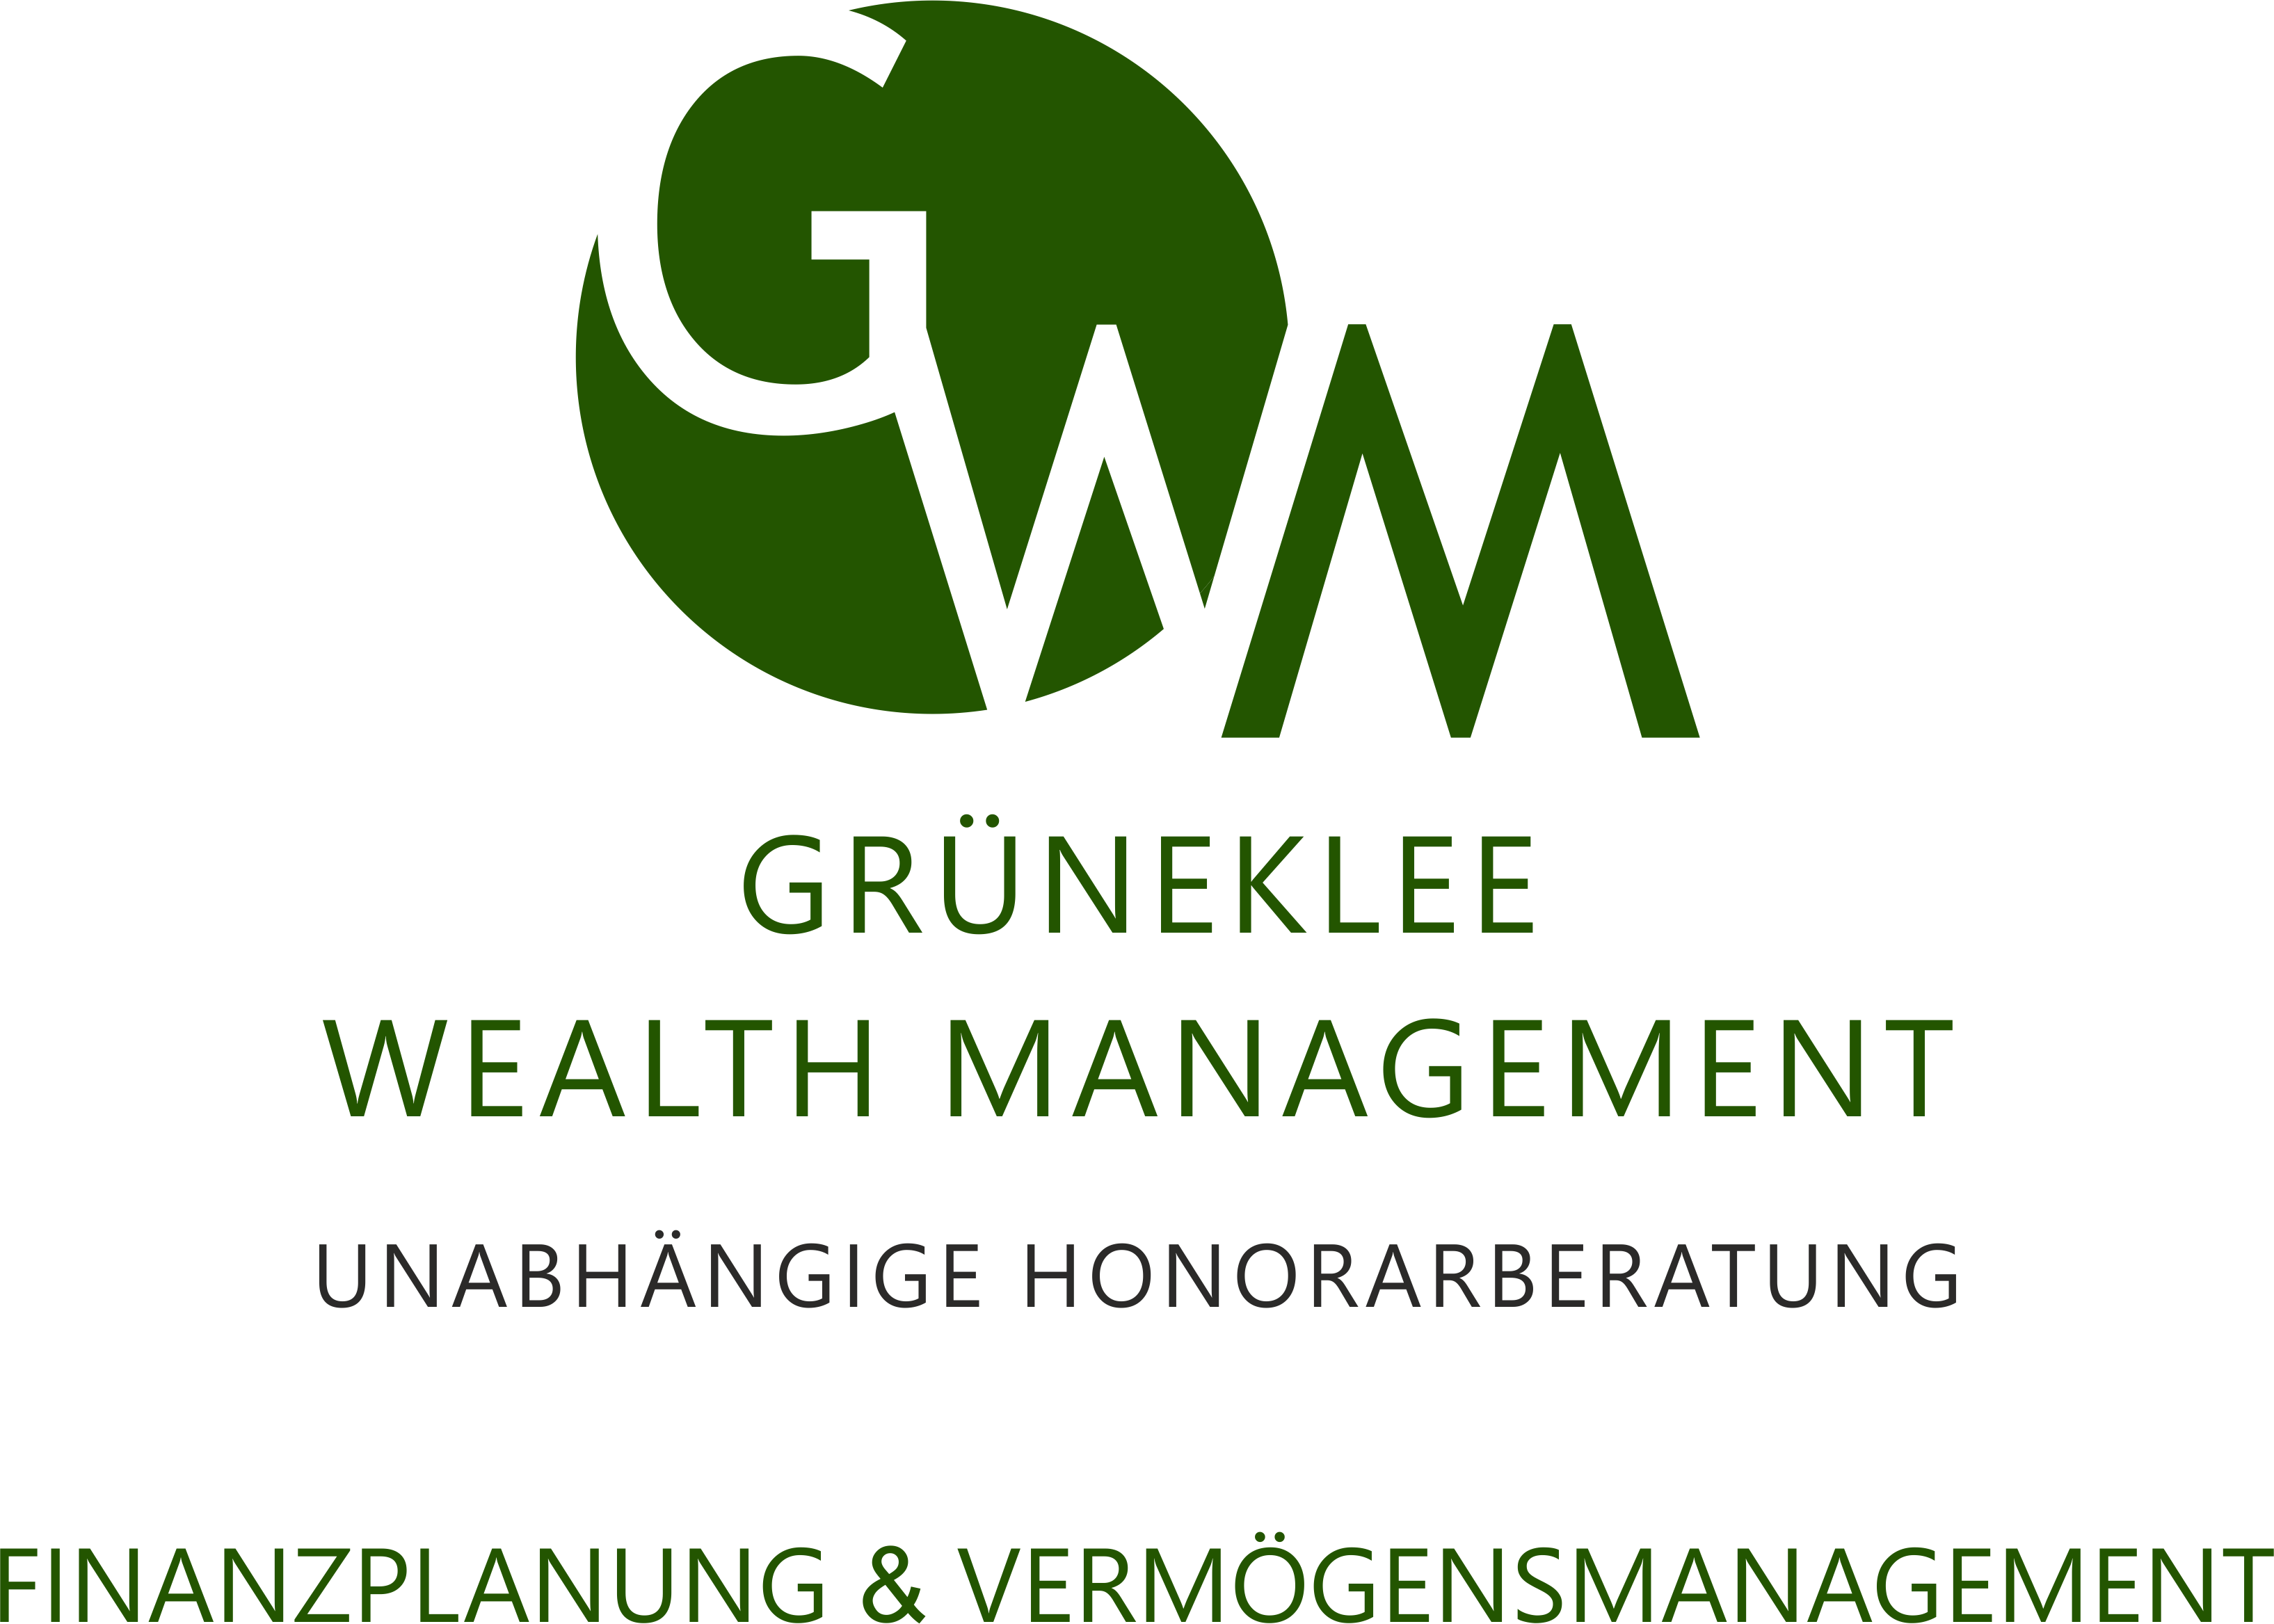 Bild 1 Grüneklee Wealth Management GmbH & Co. KG in Paderborn